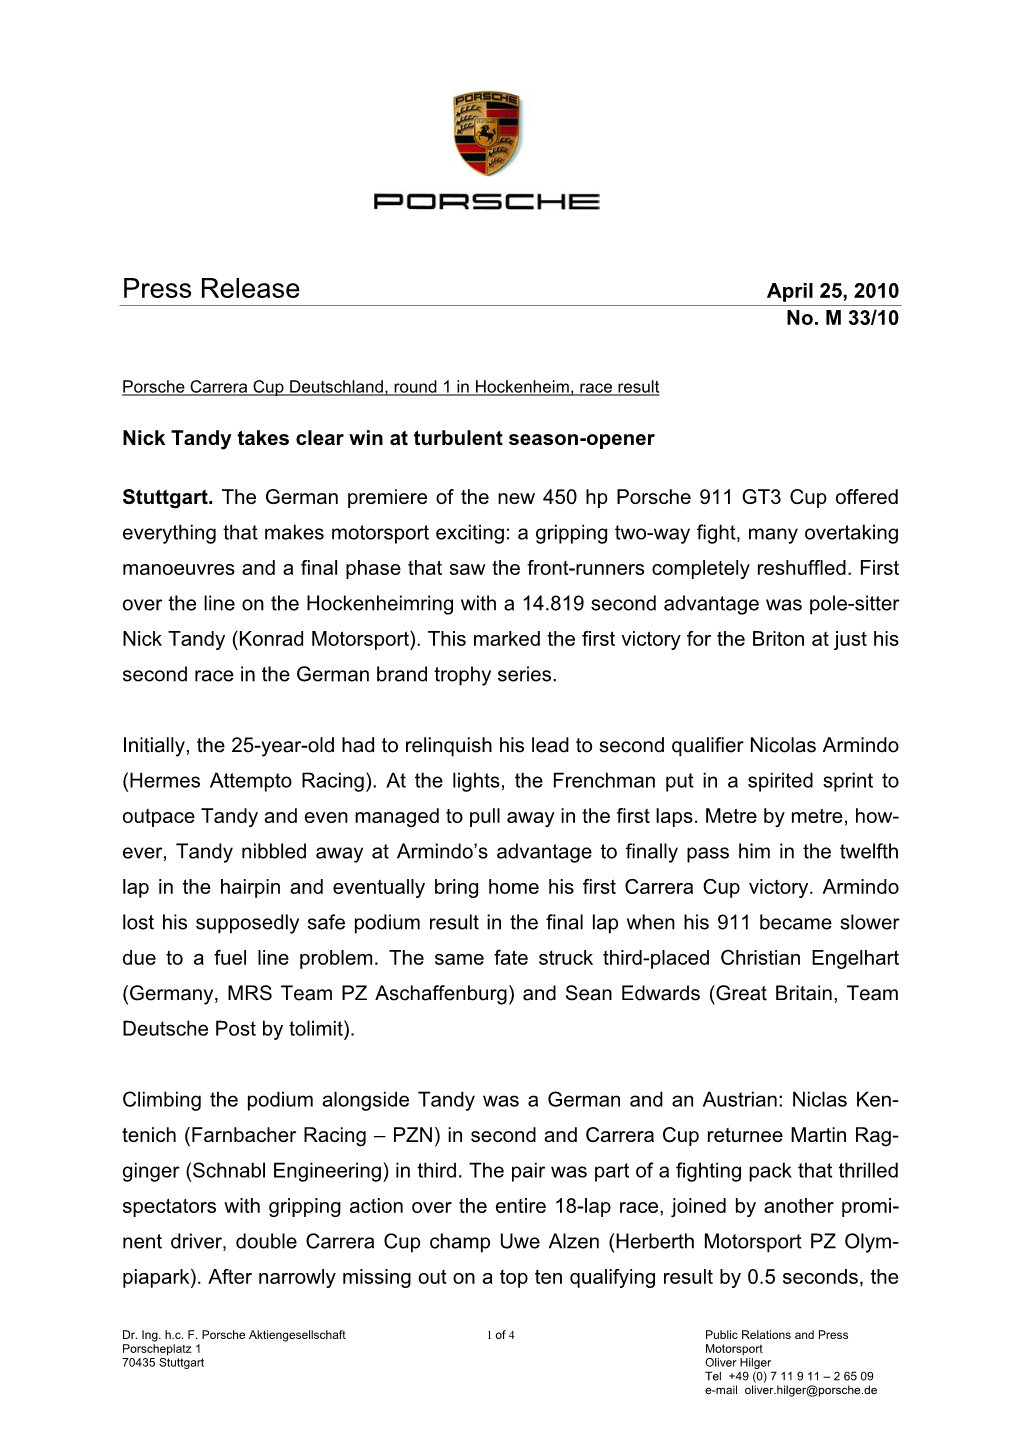 Press Release April 25, 2010 No